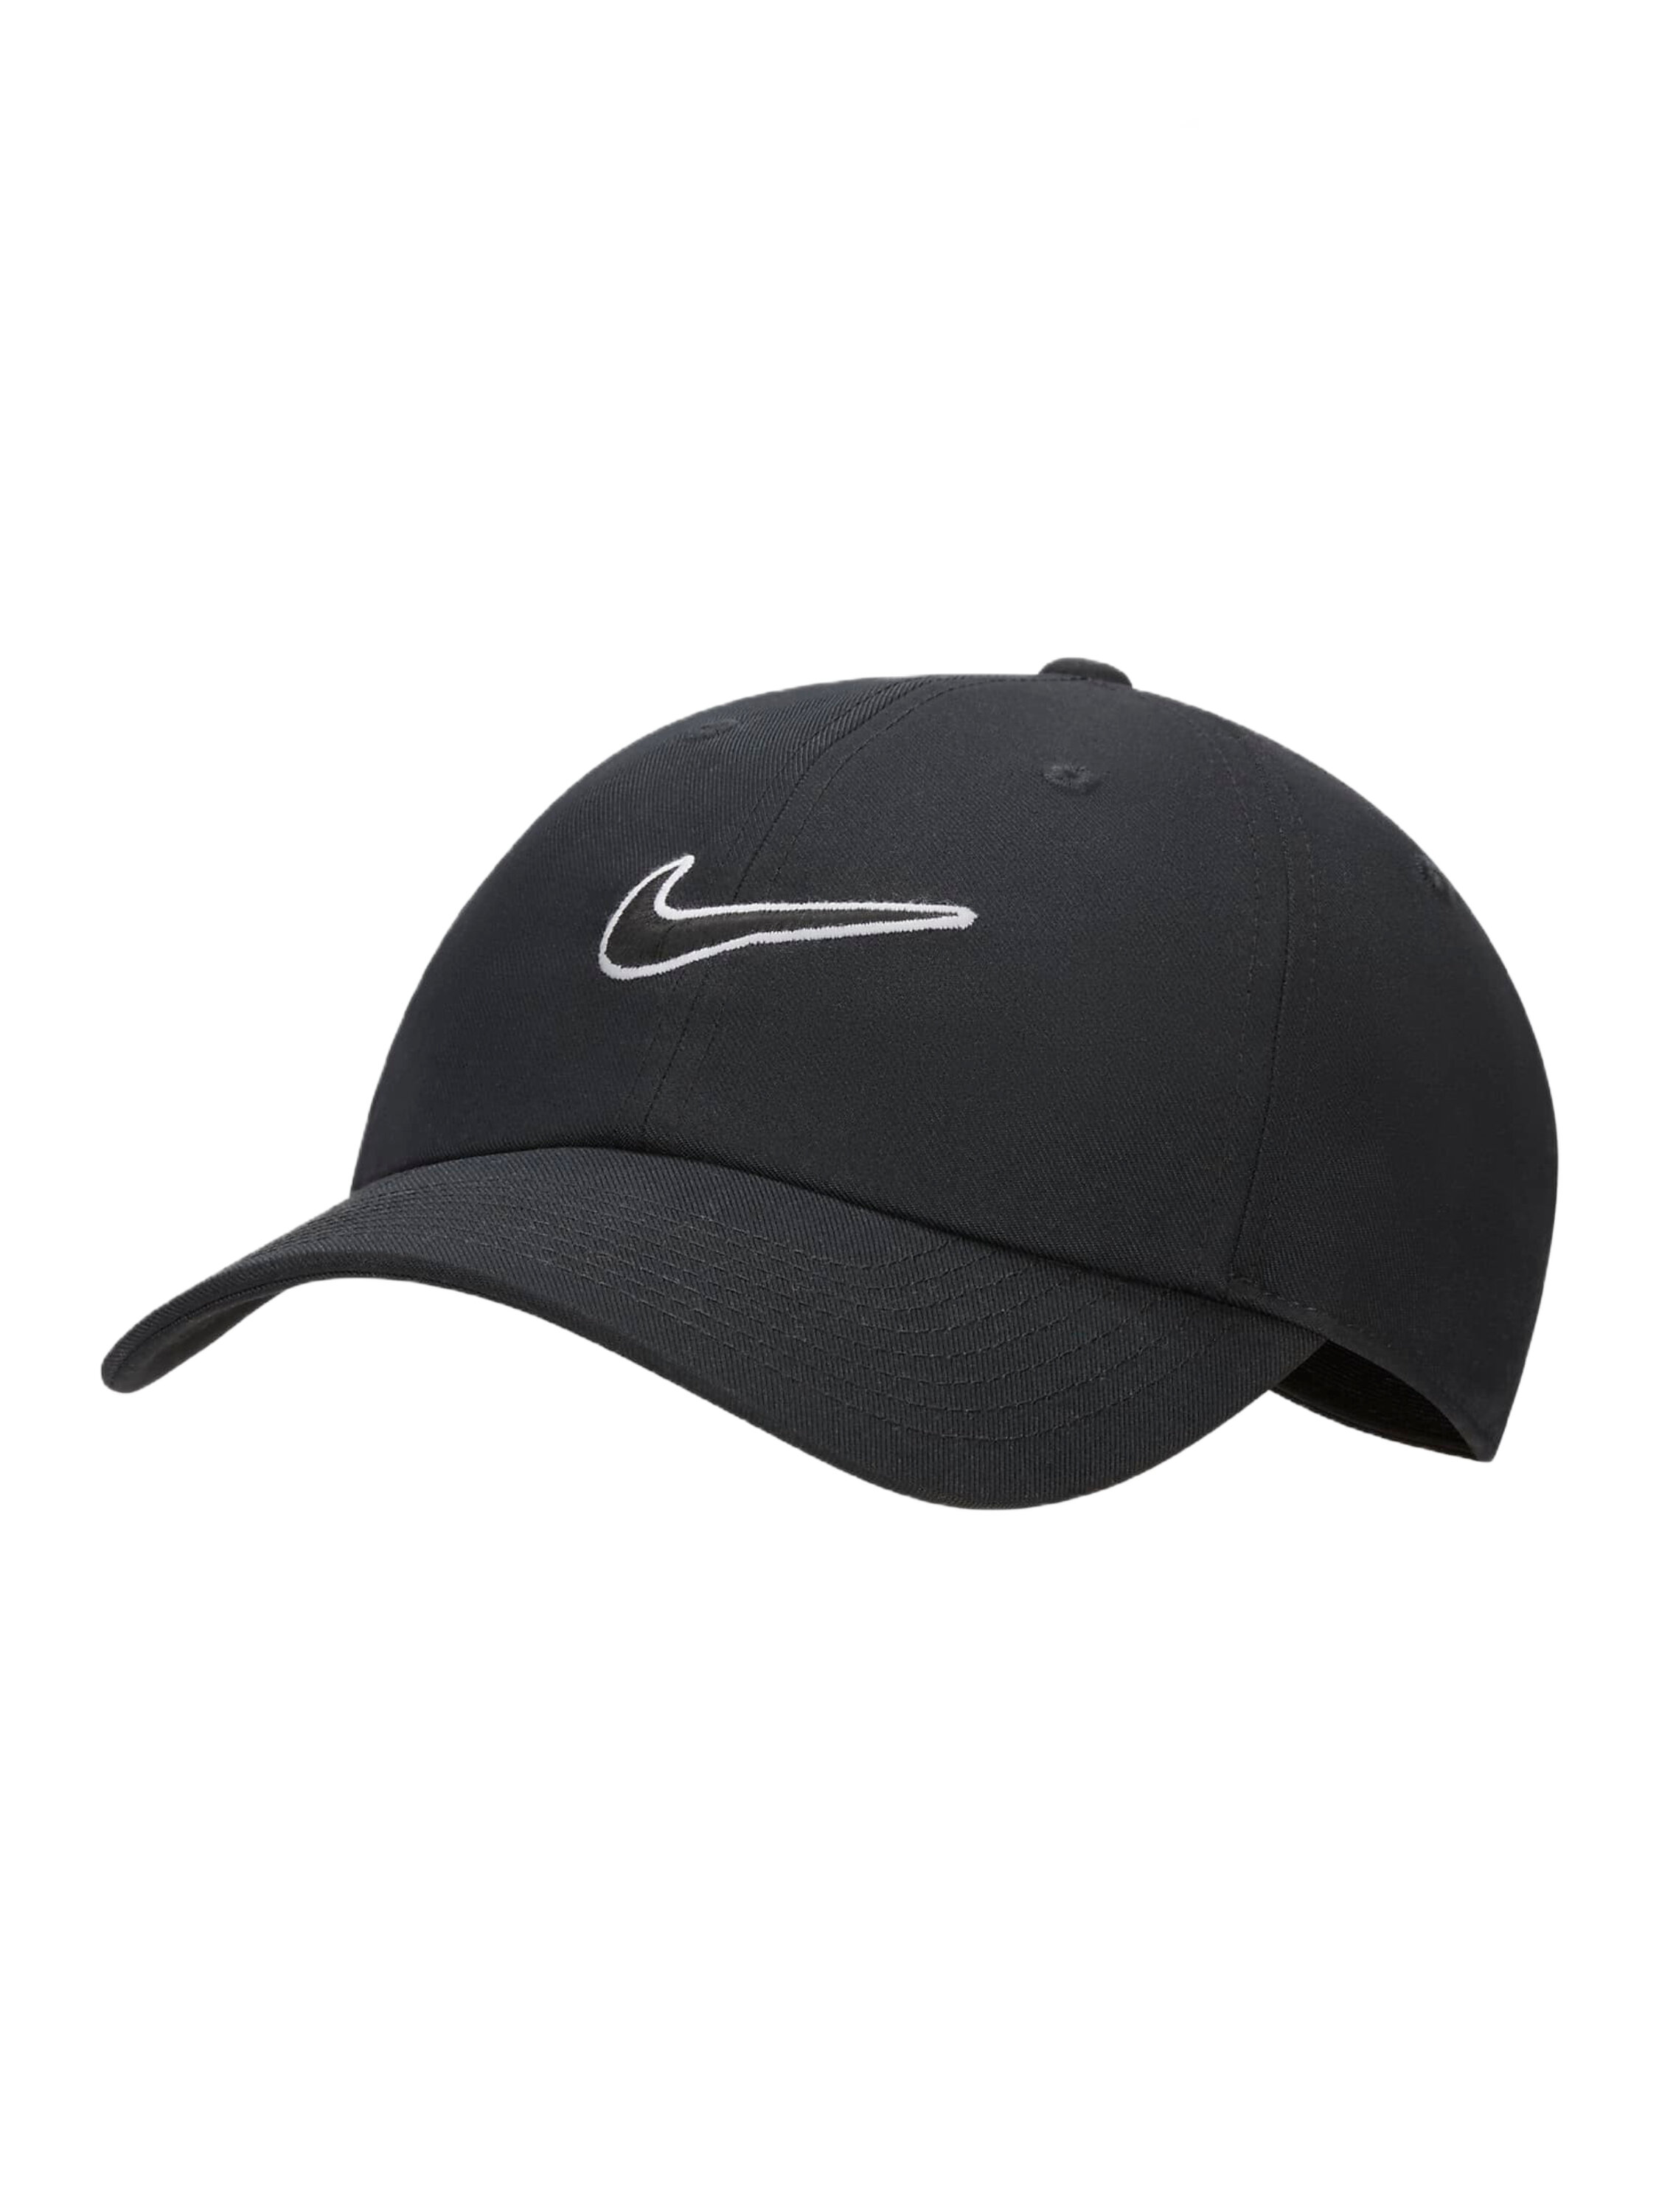 Бейсболка унисекс Nike Club Unstructured Swoosh Cap черная, р. S/M